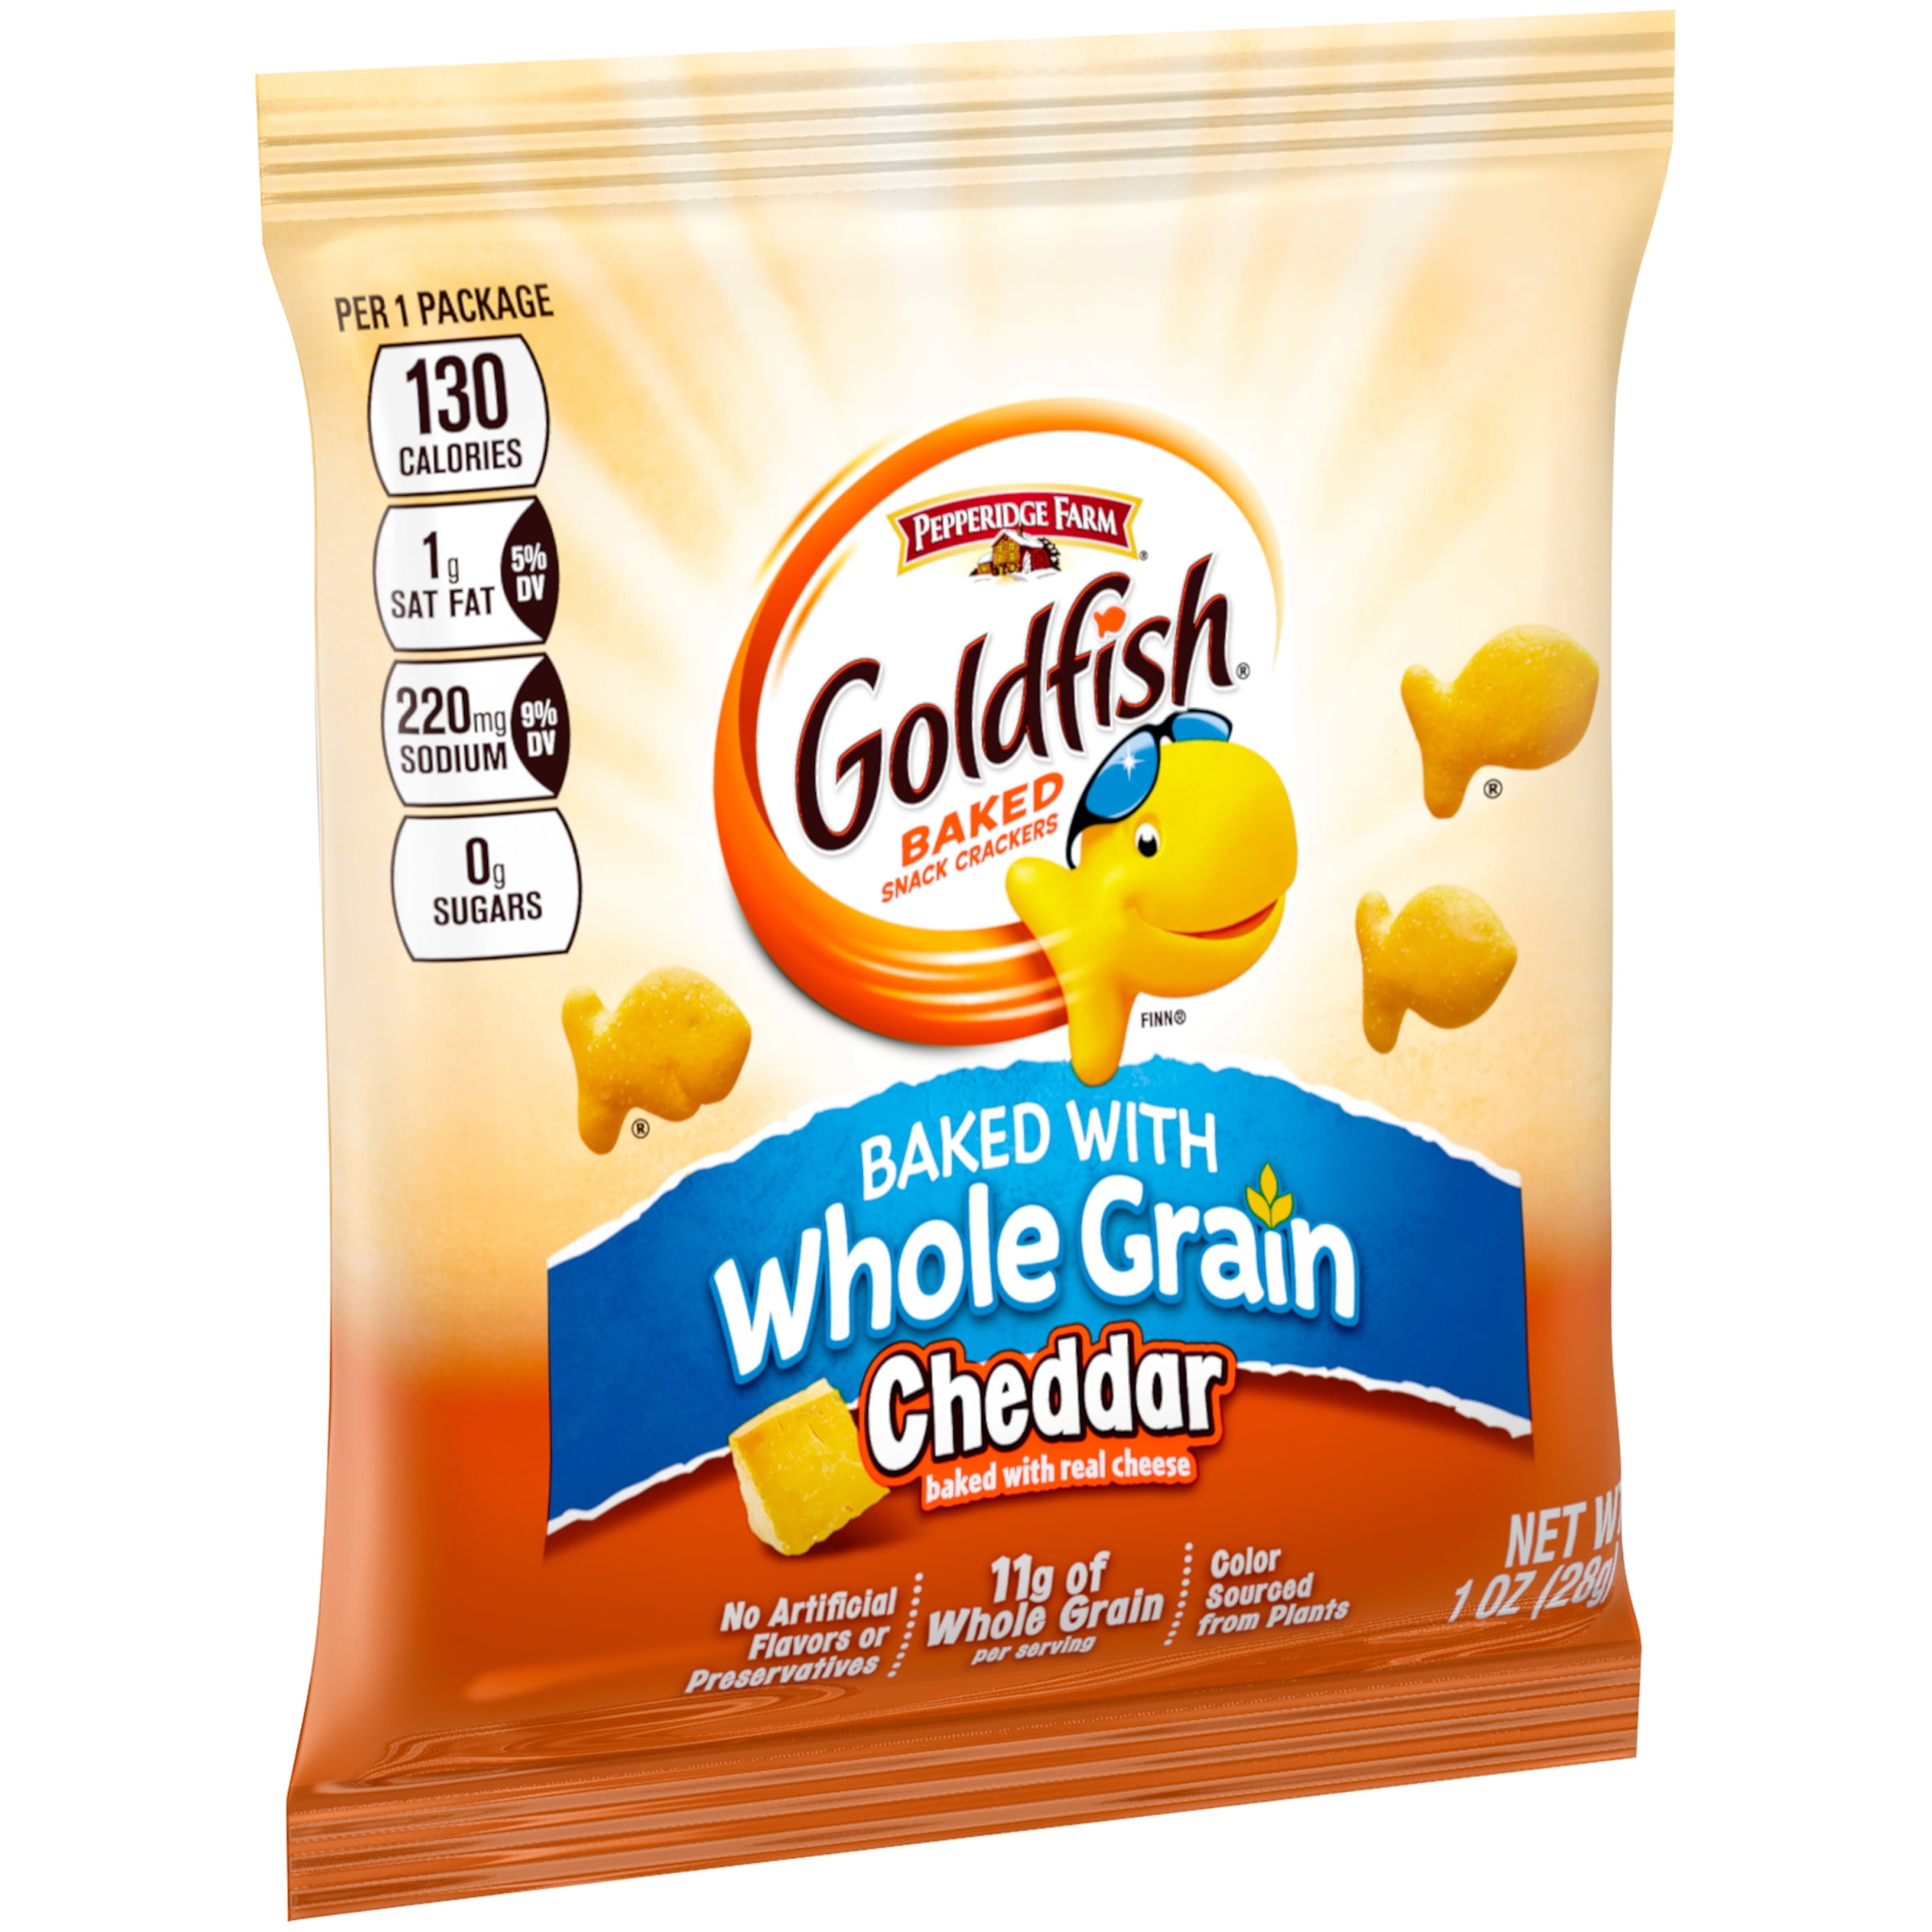 32 oz whole grain choices wic